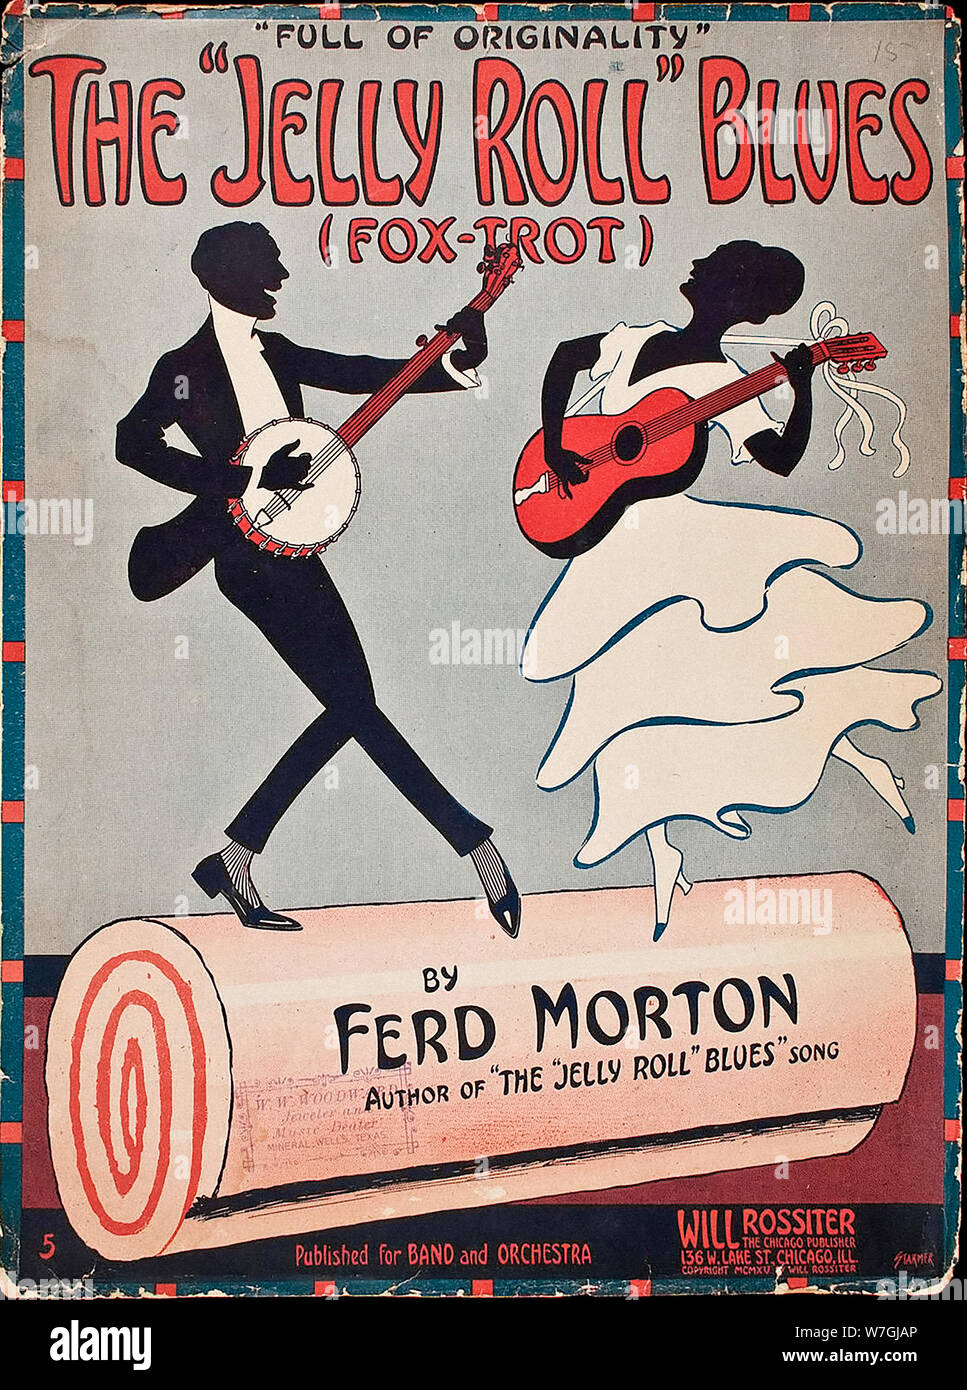 Abdeckung der ersten Jazz in Amerika veröffentlicht - die "Jelly Roll "Blues (Fox-Trot) Morton, Ferd - 1915 Stockfoto